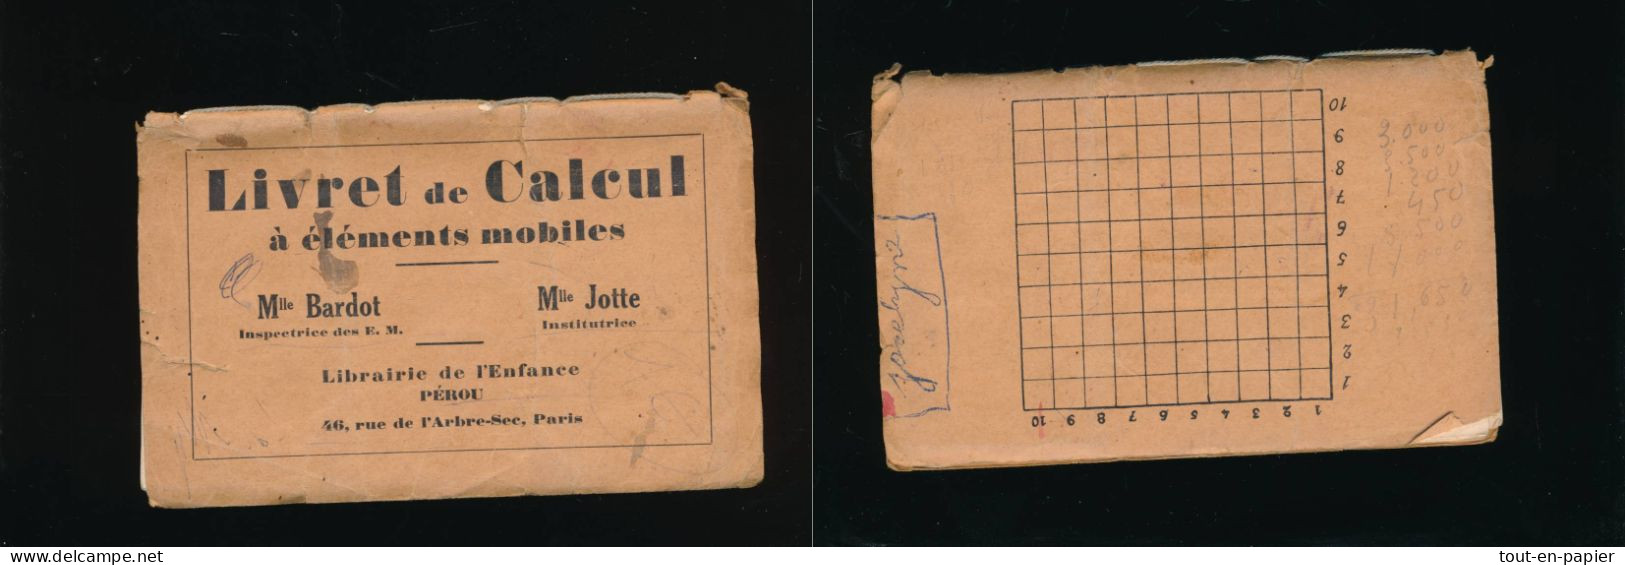 Livret De Calcul à éléments Mobiles Librairie De L'enfance Pérou Paris - Melle Jotte Institutrice - Oud Speelgoed